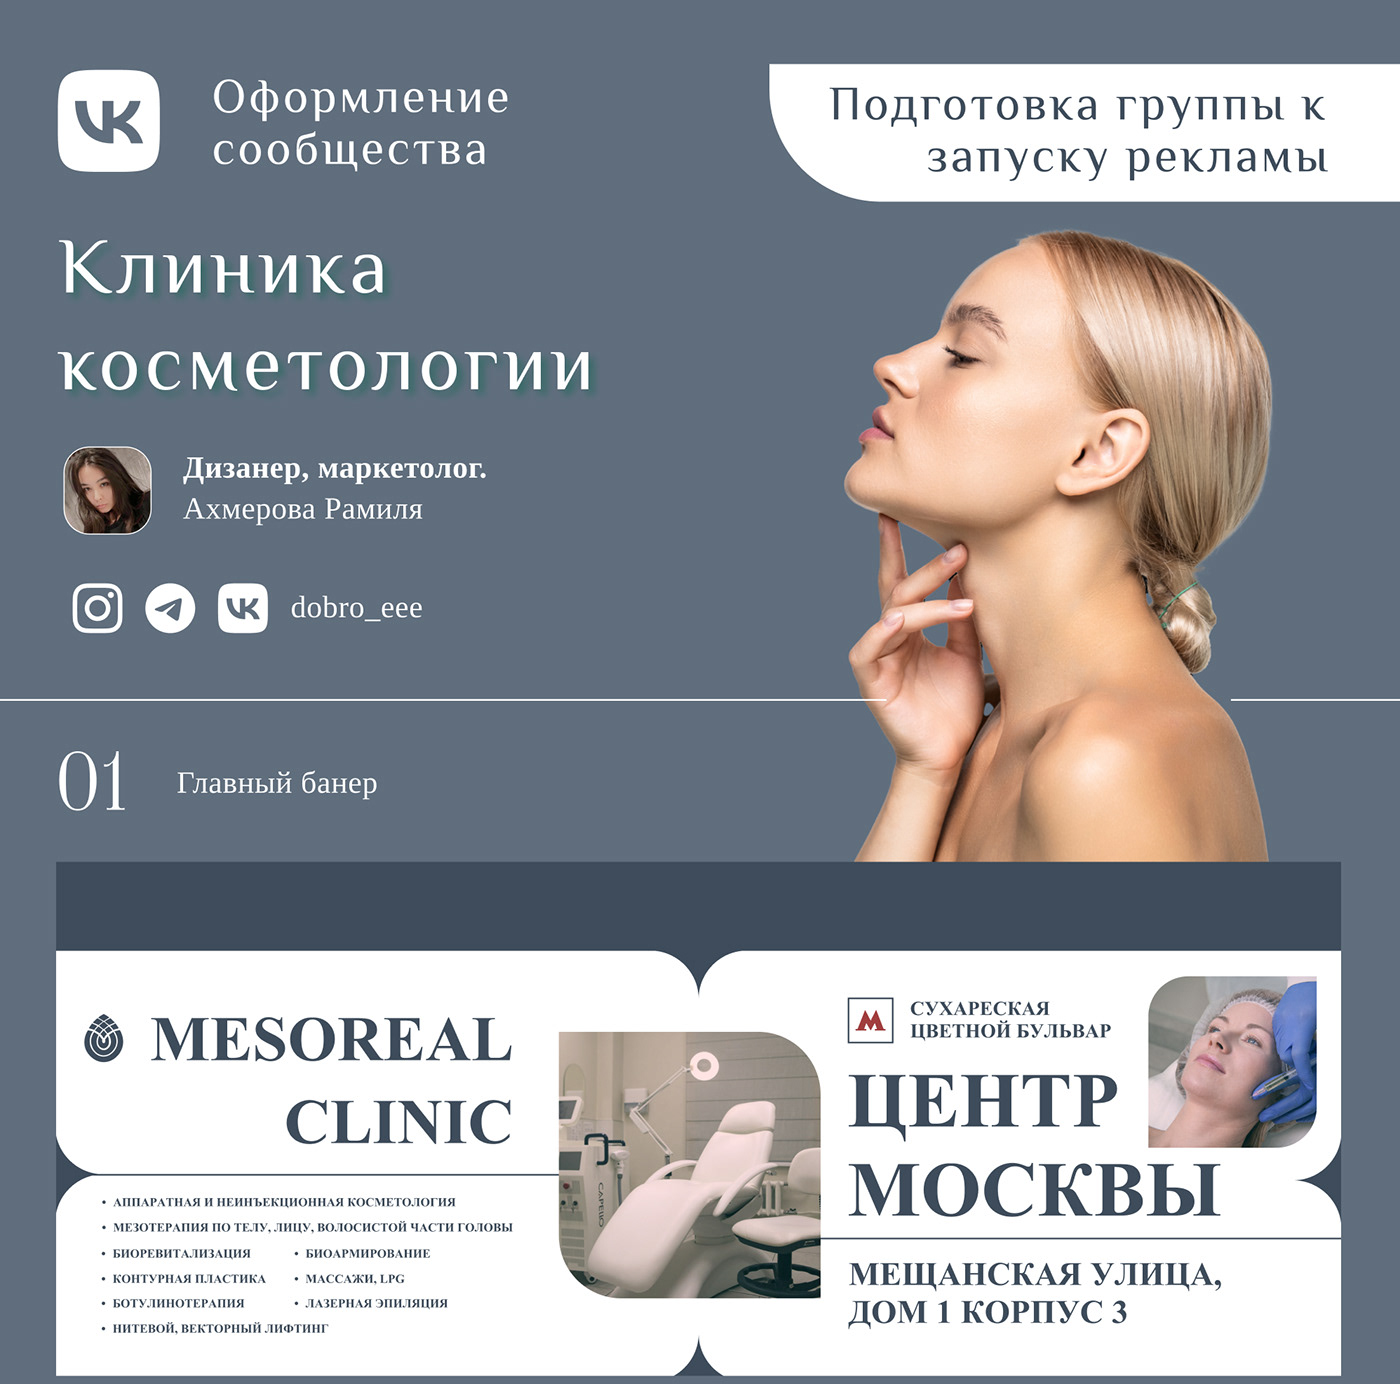 вконтакте Оформление вк дизайн ВК дизайн группы вконтакте медицина Косметология beauty реклама VK Оформление соц сетей